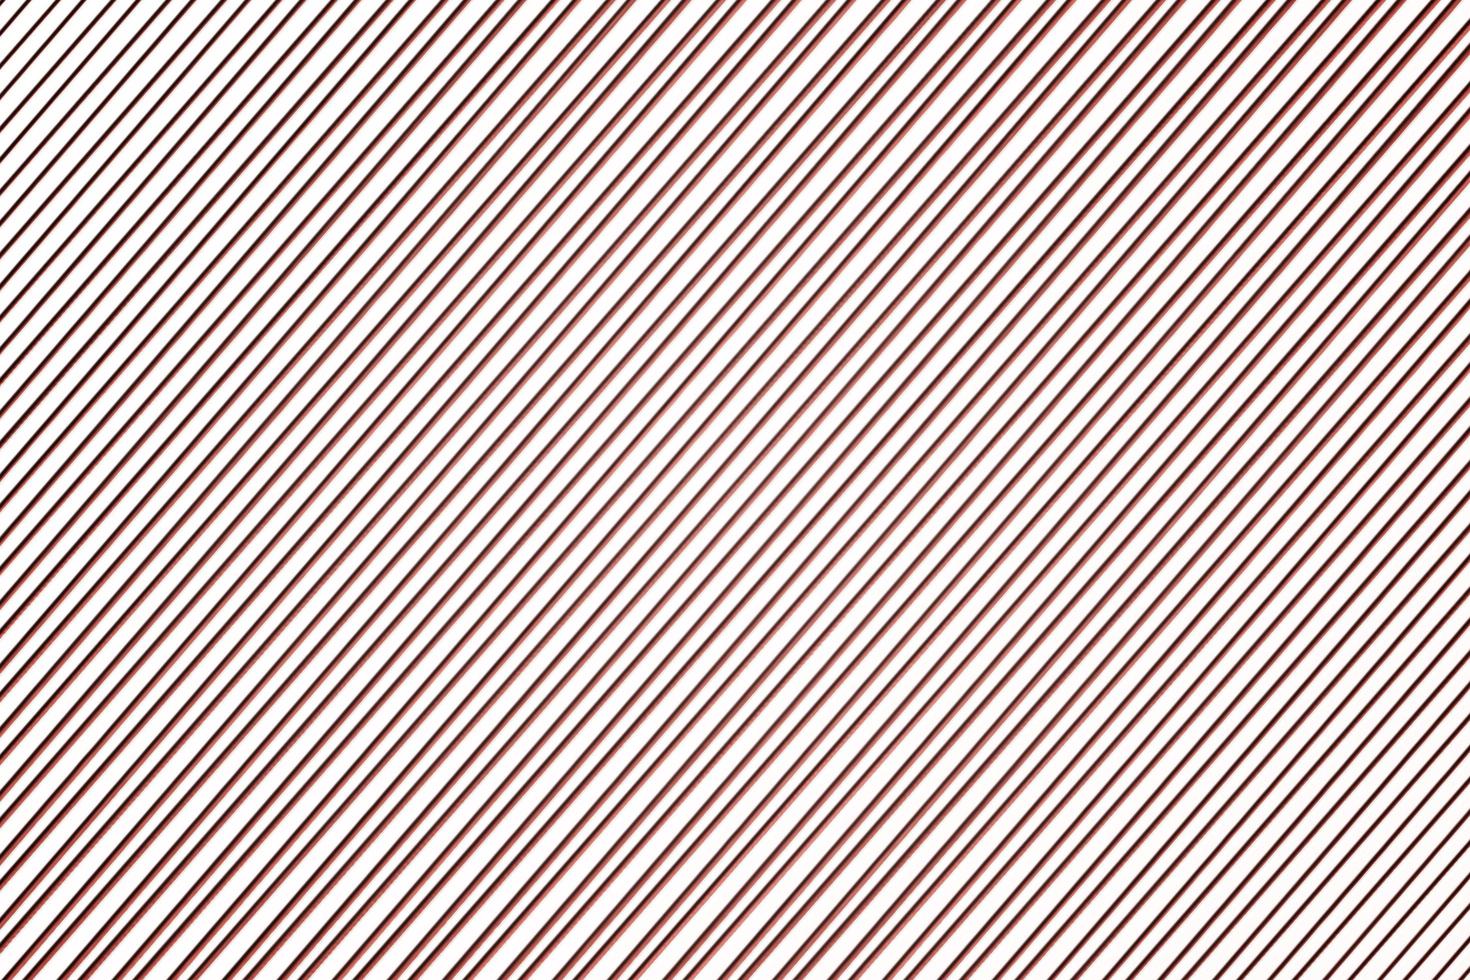 structure de la ligne diagonale sur la surface de la feuille de plastique rose, arrière-plan abstrait photo